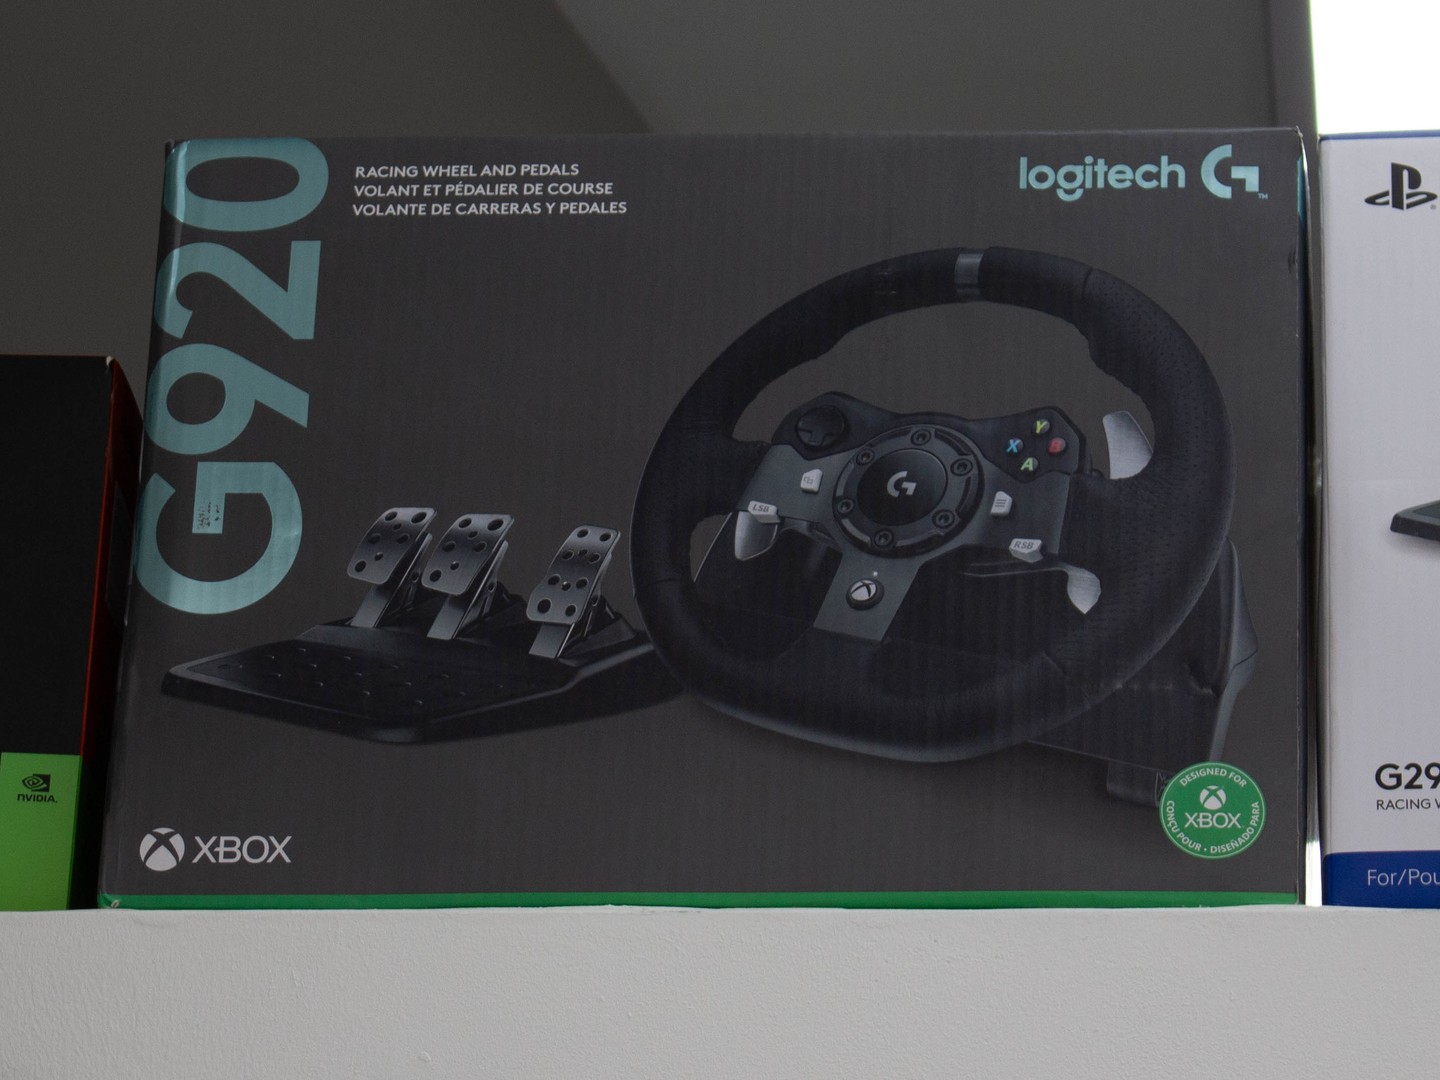 consolas y videojuegos - Volantes Logitech G920 /Volante de carreras para Xbox y PC. 0